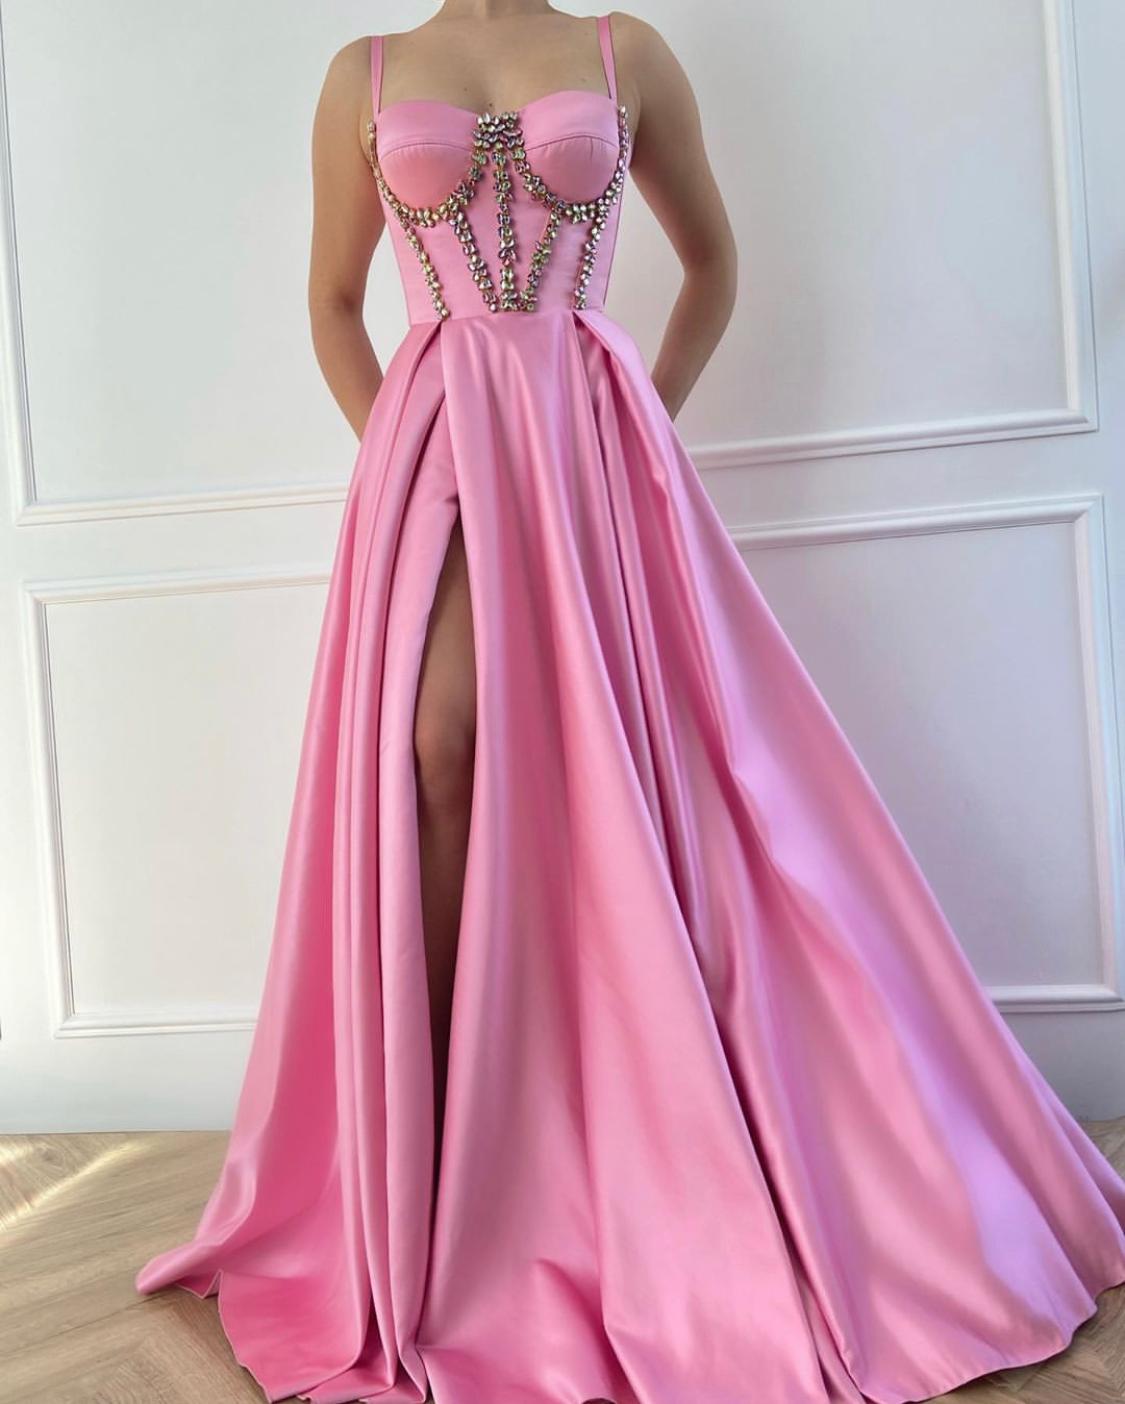 Satin Choose a gorgeous satin wedding dress at DevotionDresses |  Devotiondresses.com